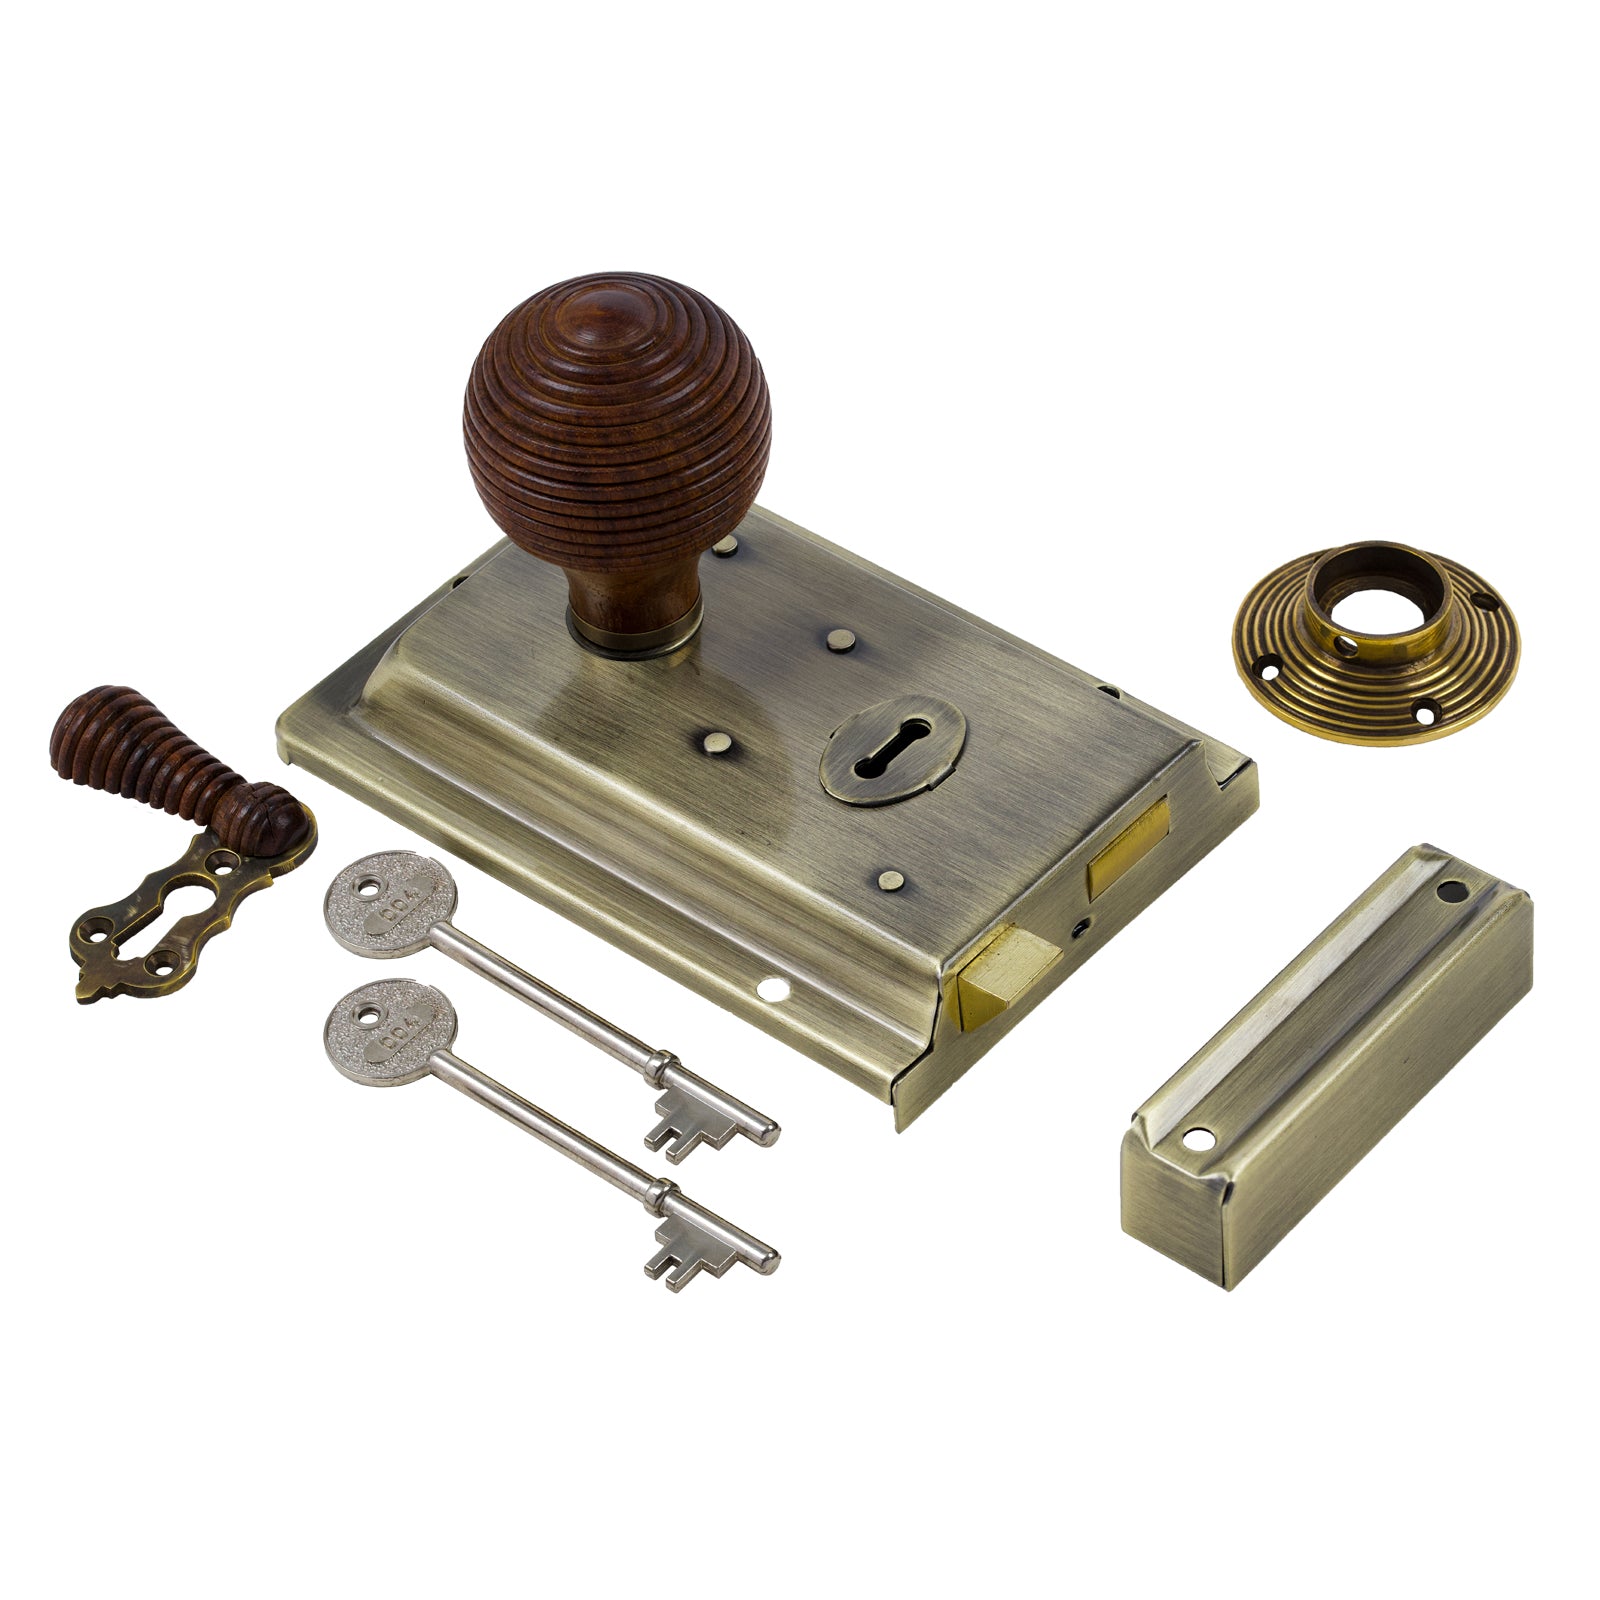 SHOW Beehive Door Knob Set - Rosewood & Antique On Antique Brass Rim Lock